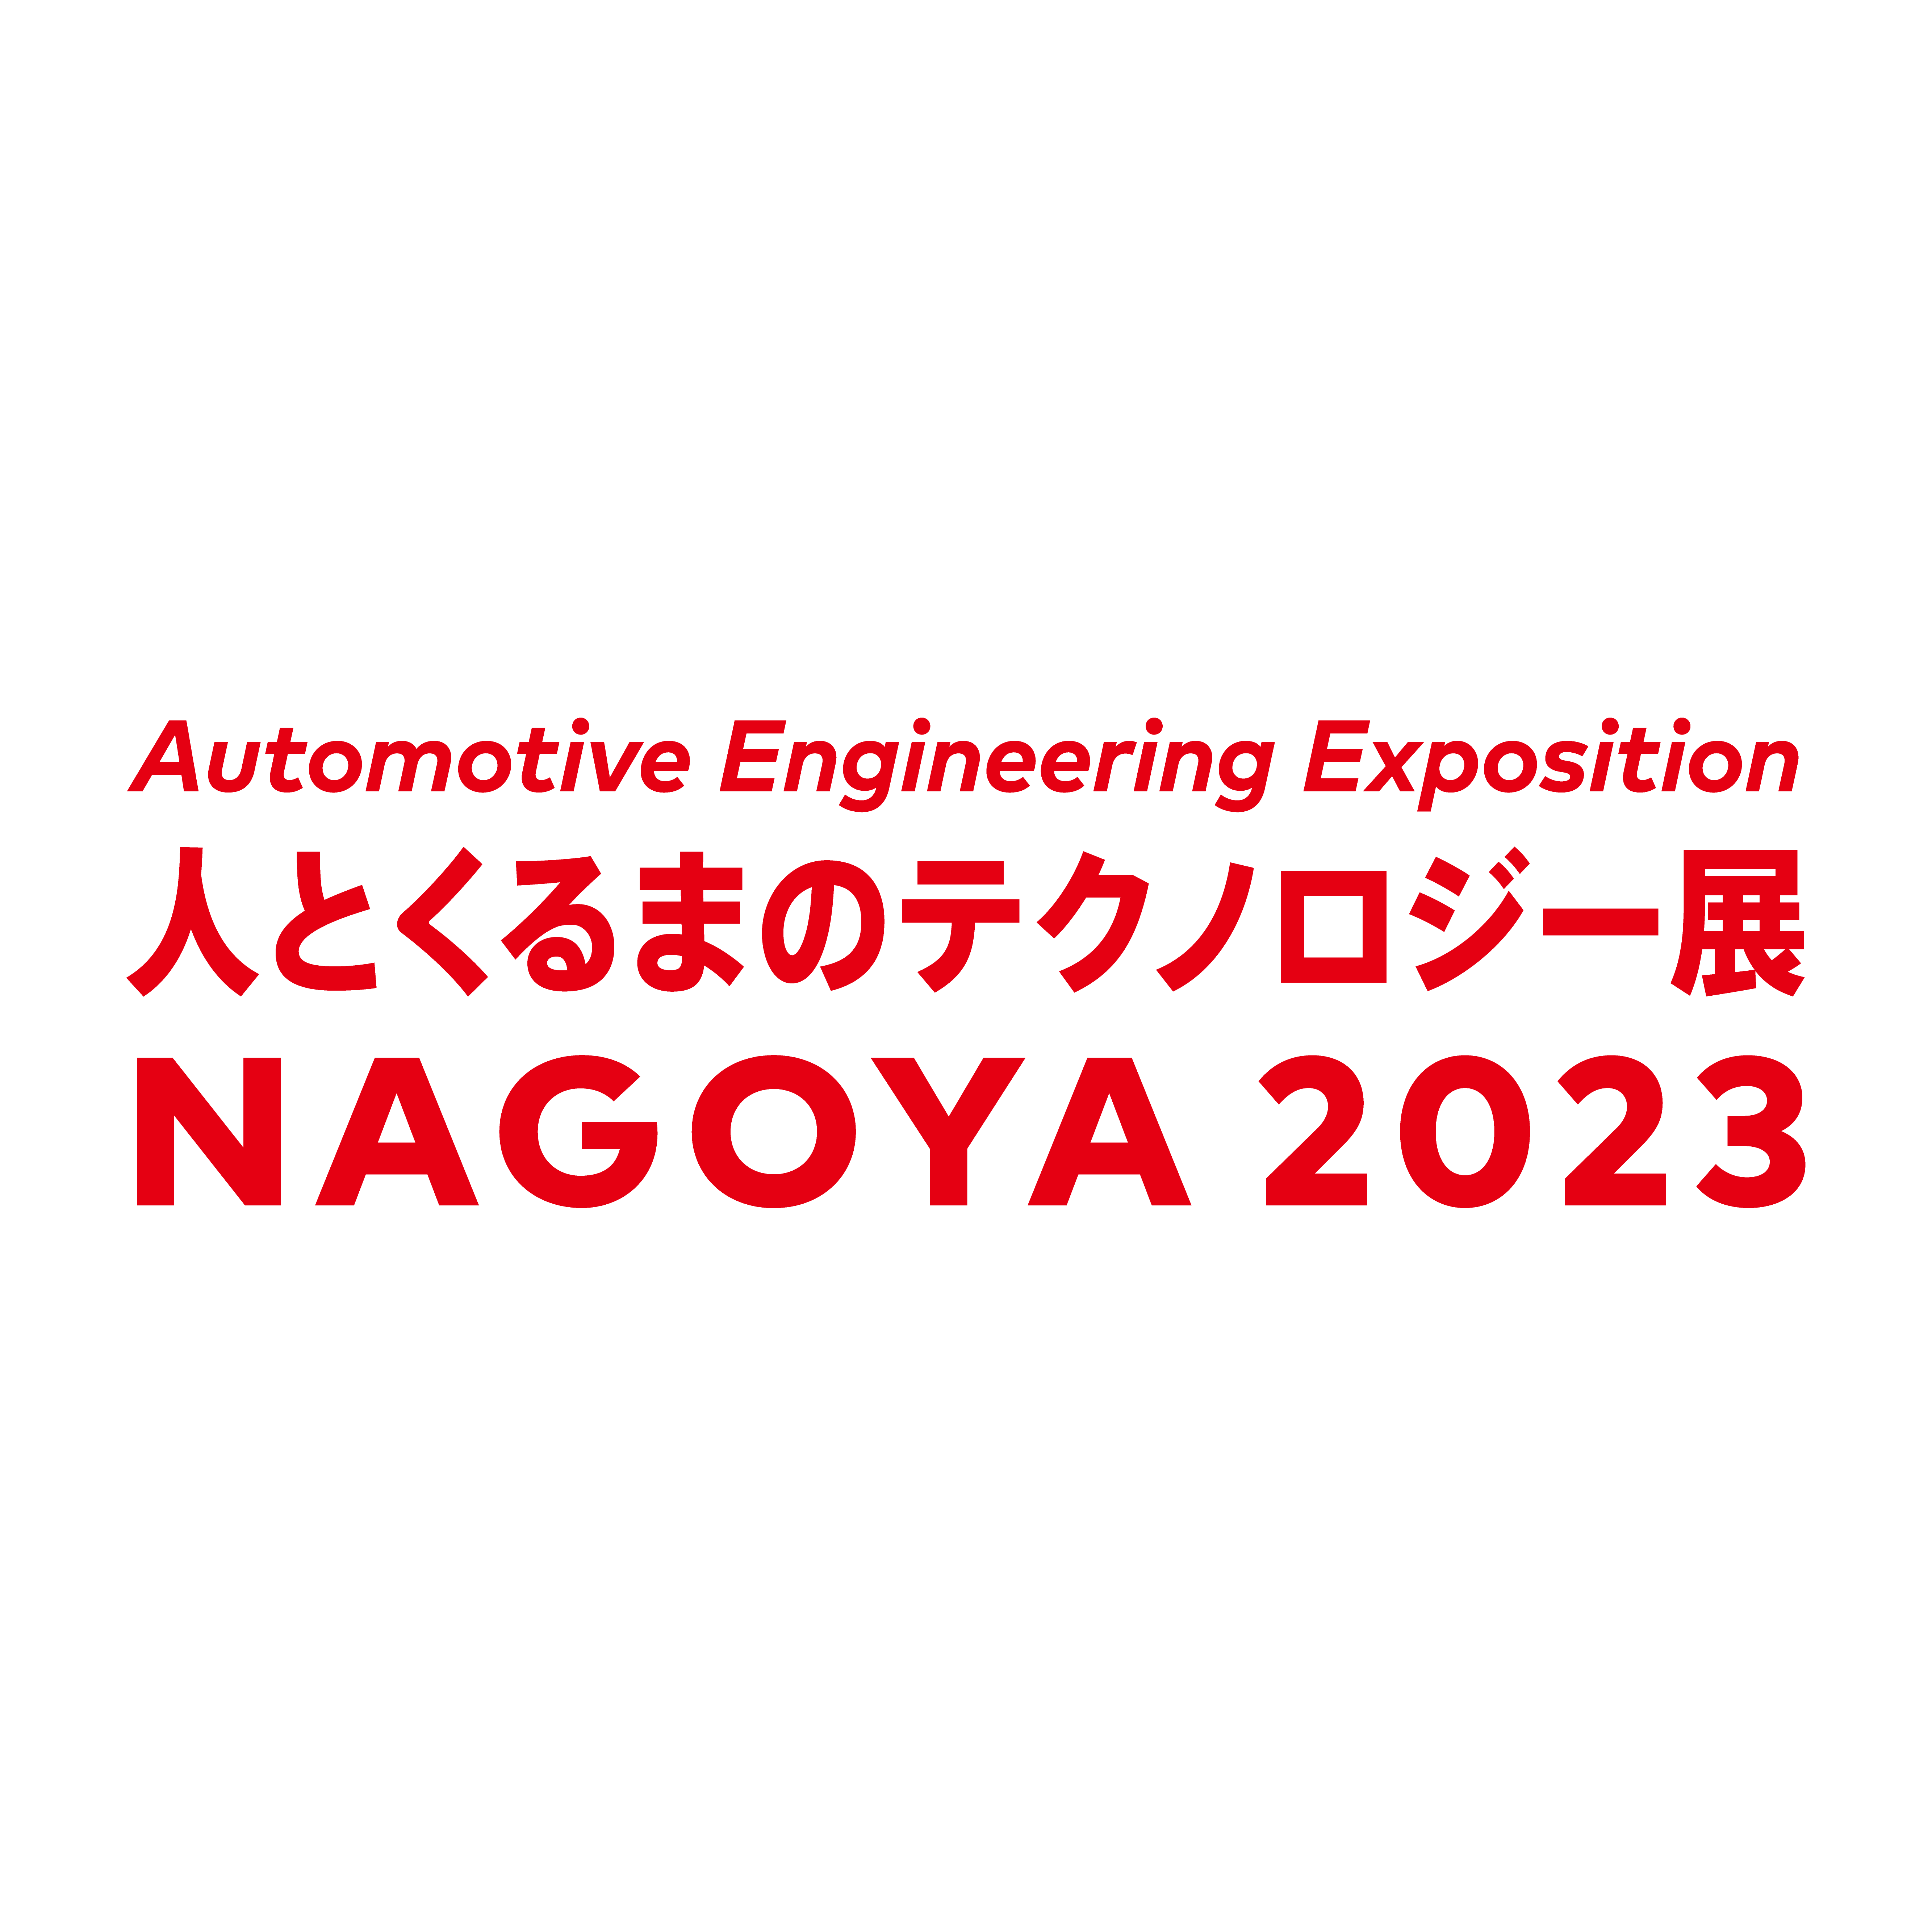 人とくるまのテクノロジー展 2023 NAGOYA